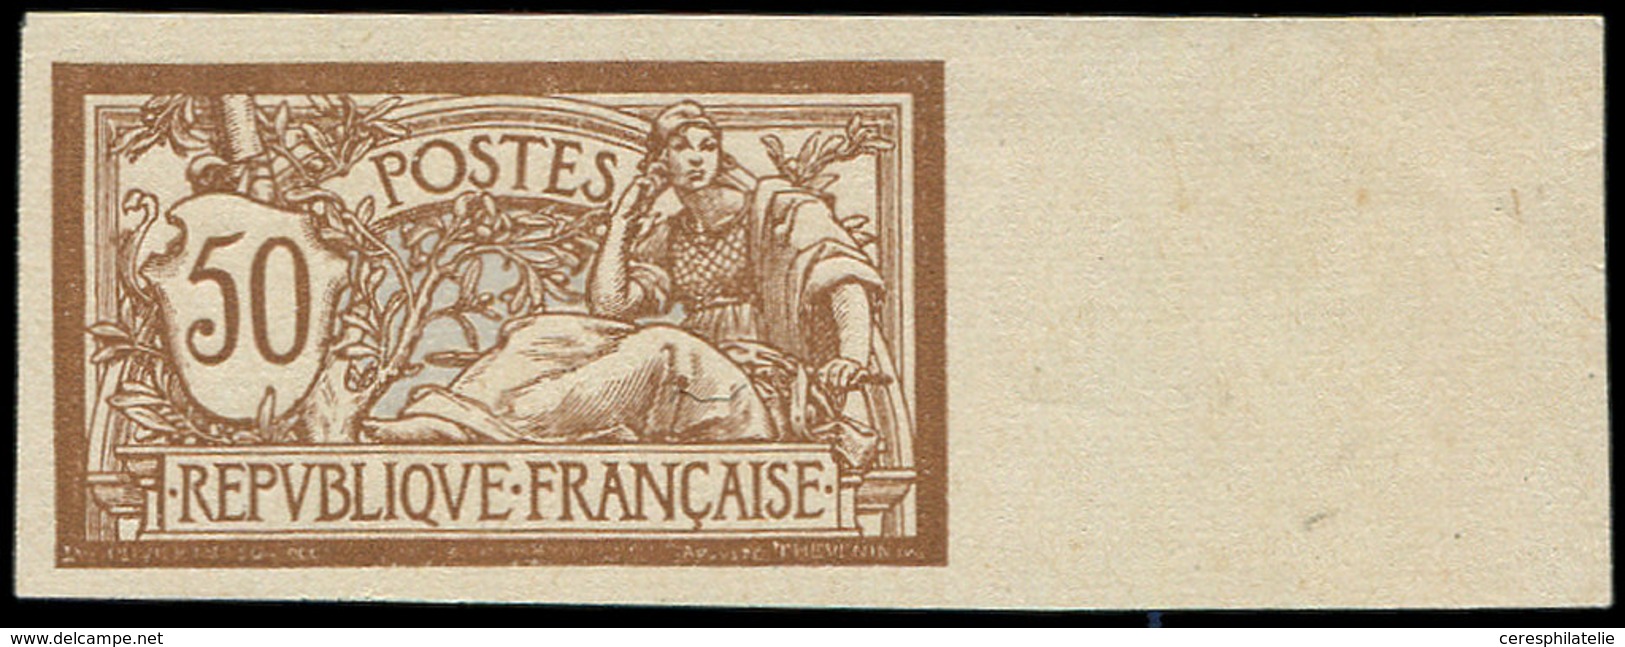 (*) Collection Au Type Merson - 120  50c. Brun Et Gris, NON DENTELE De Feuille De Référence, Bdf, TB - 1900-27 Merson